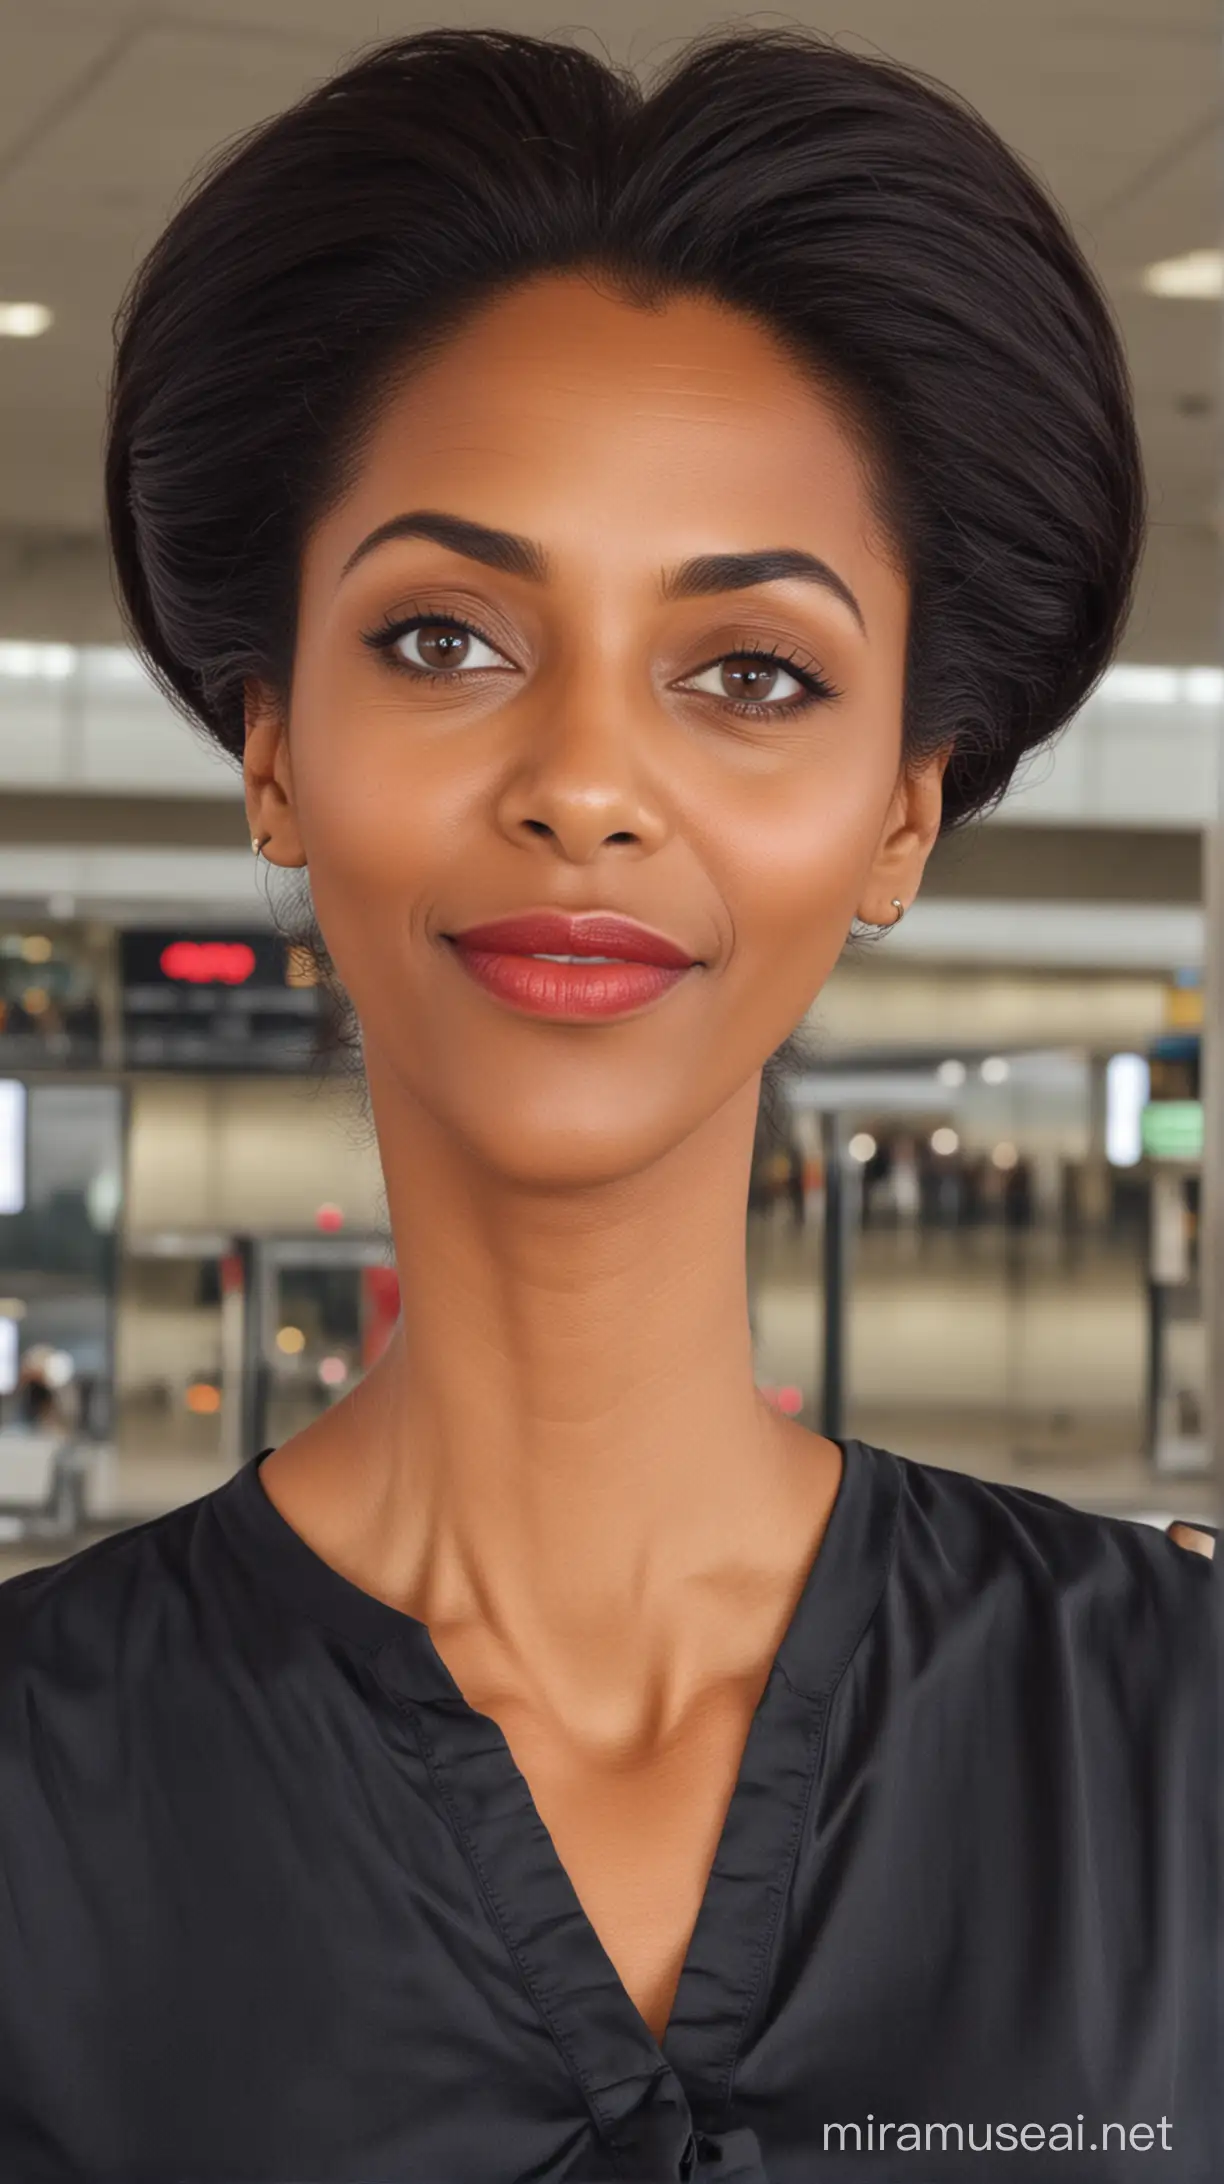 Elegant Black Woman in Kurti at Airport